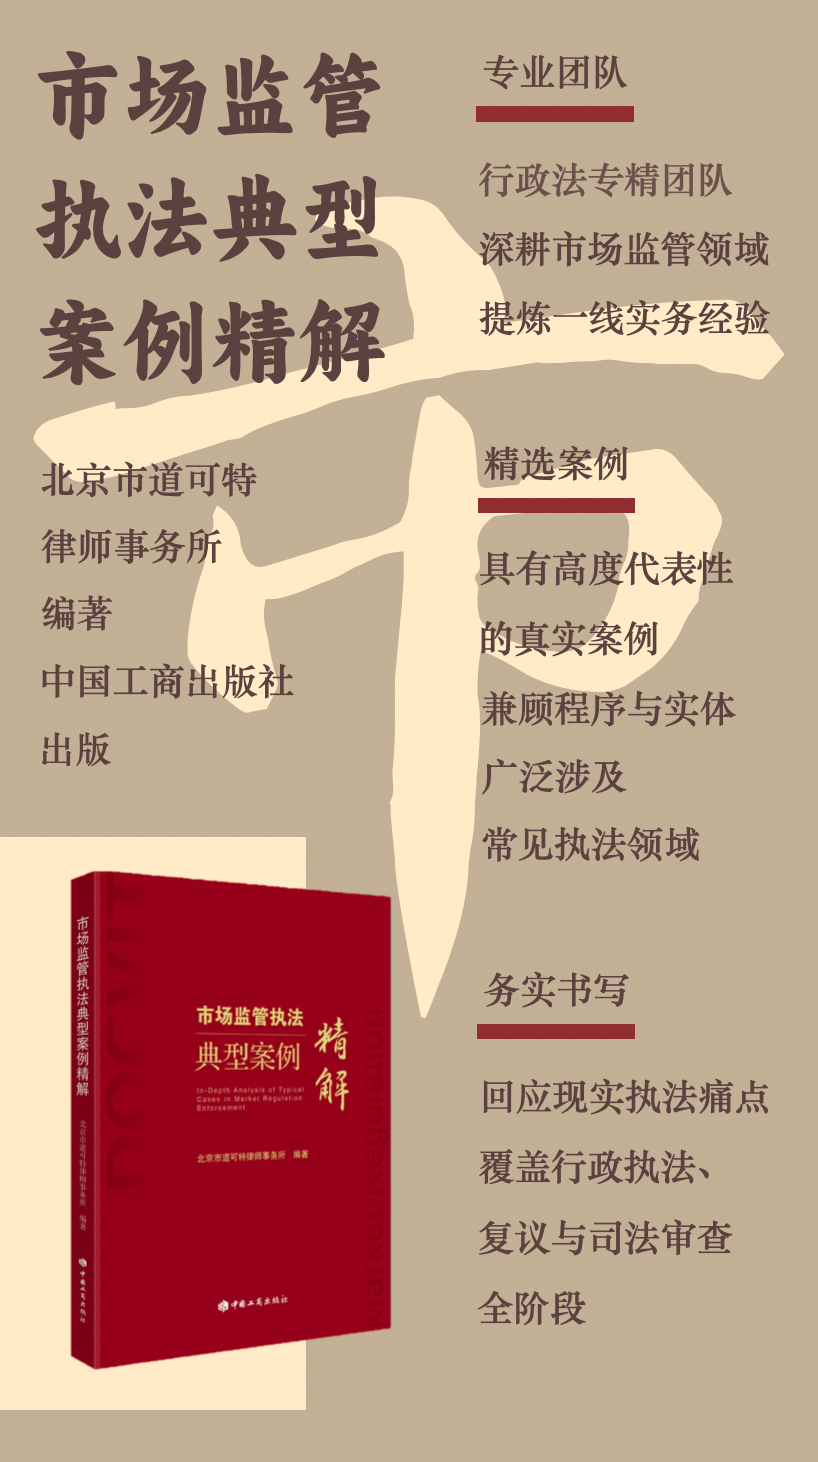 北京市道可特律师事务所编著《市场监管执法典型案例精解》